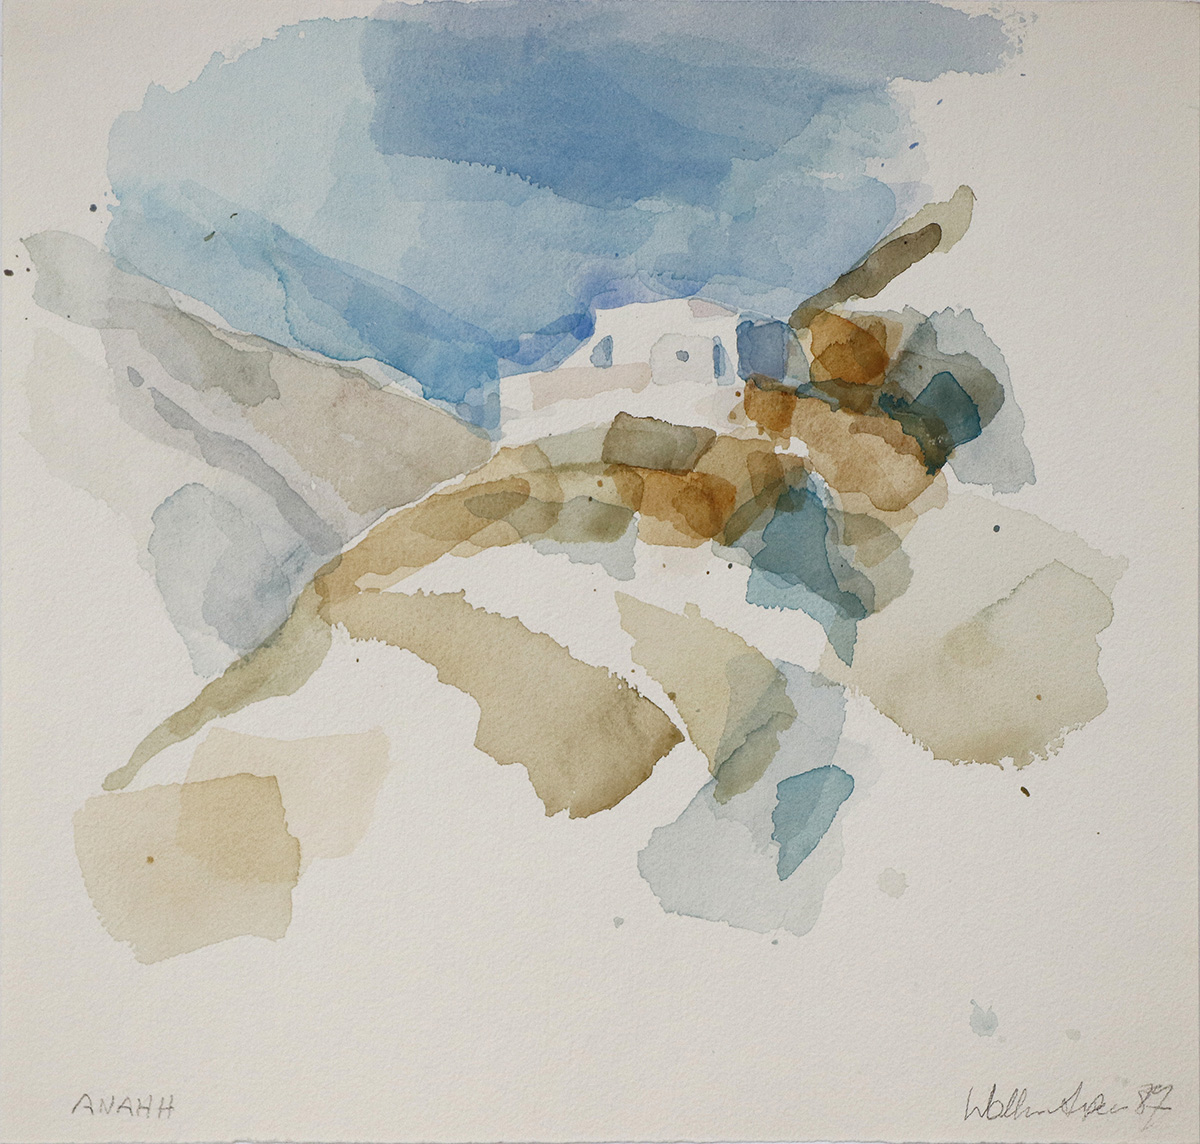 ANAHH, 198734 x 36 cmAquarell auf Büttenpapier